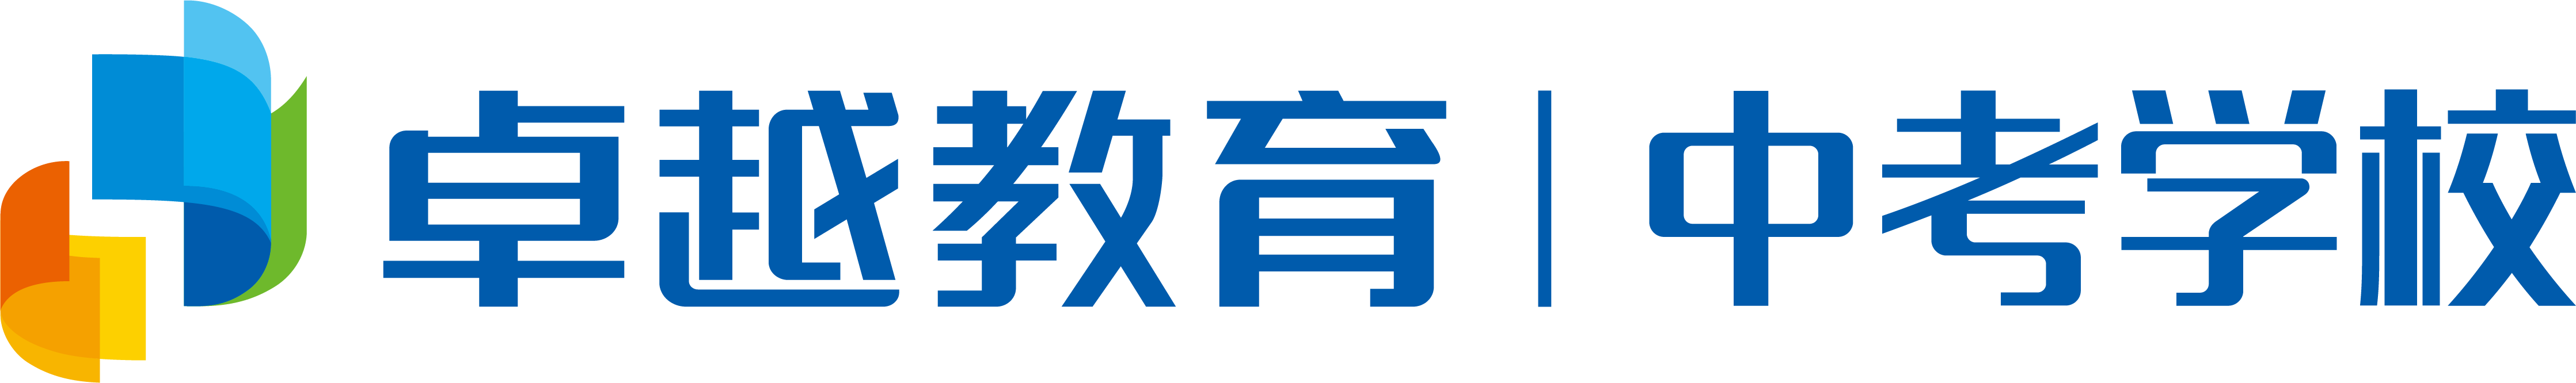 中考学校 logo